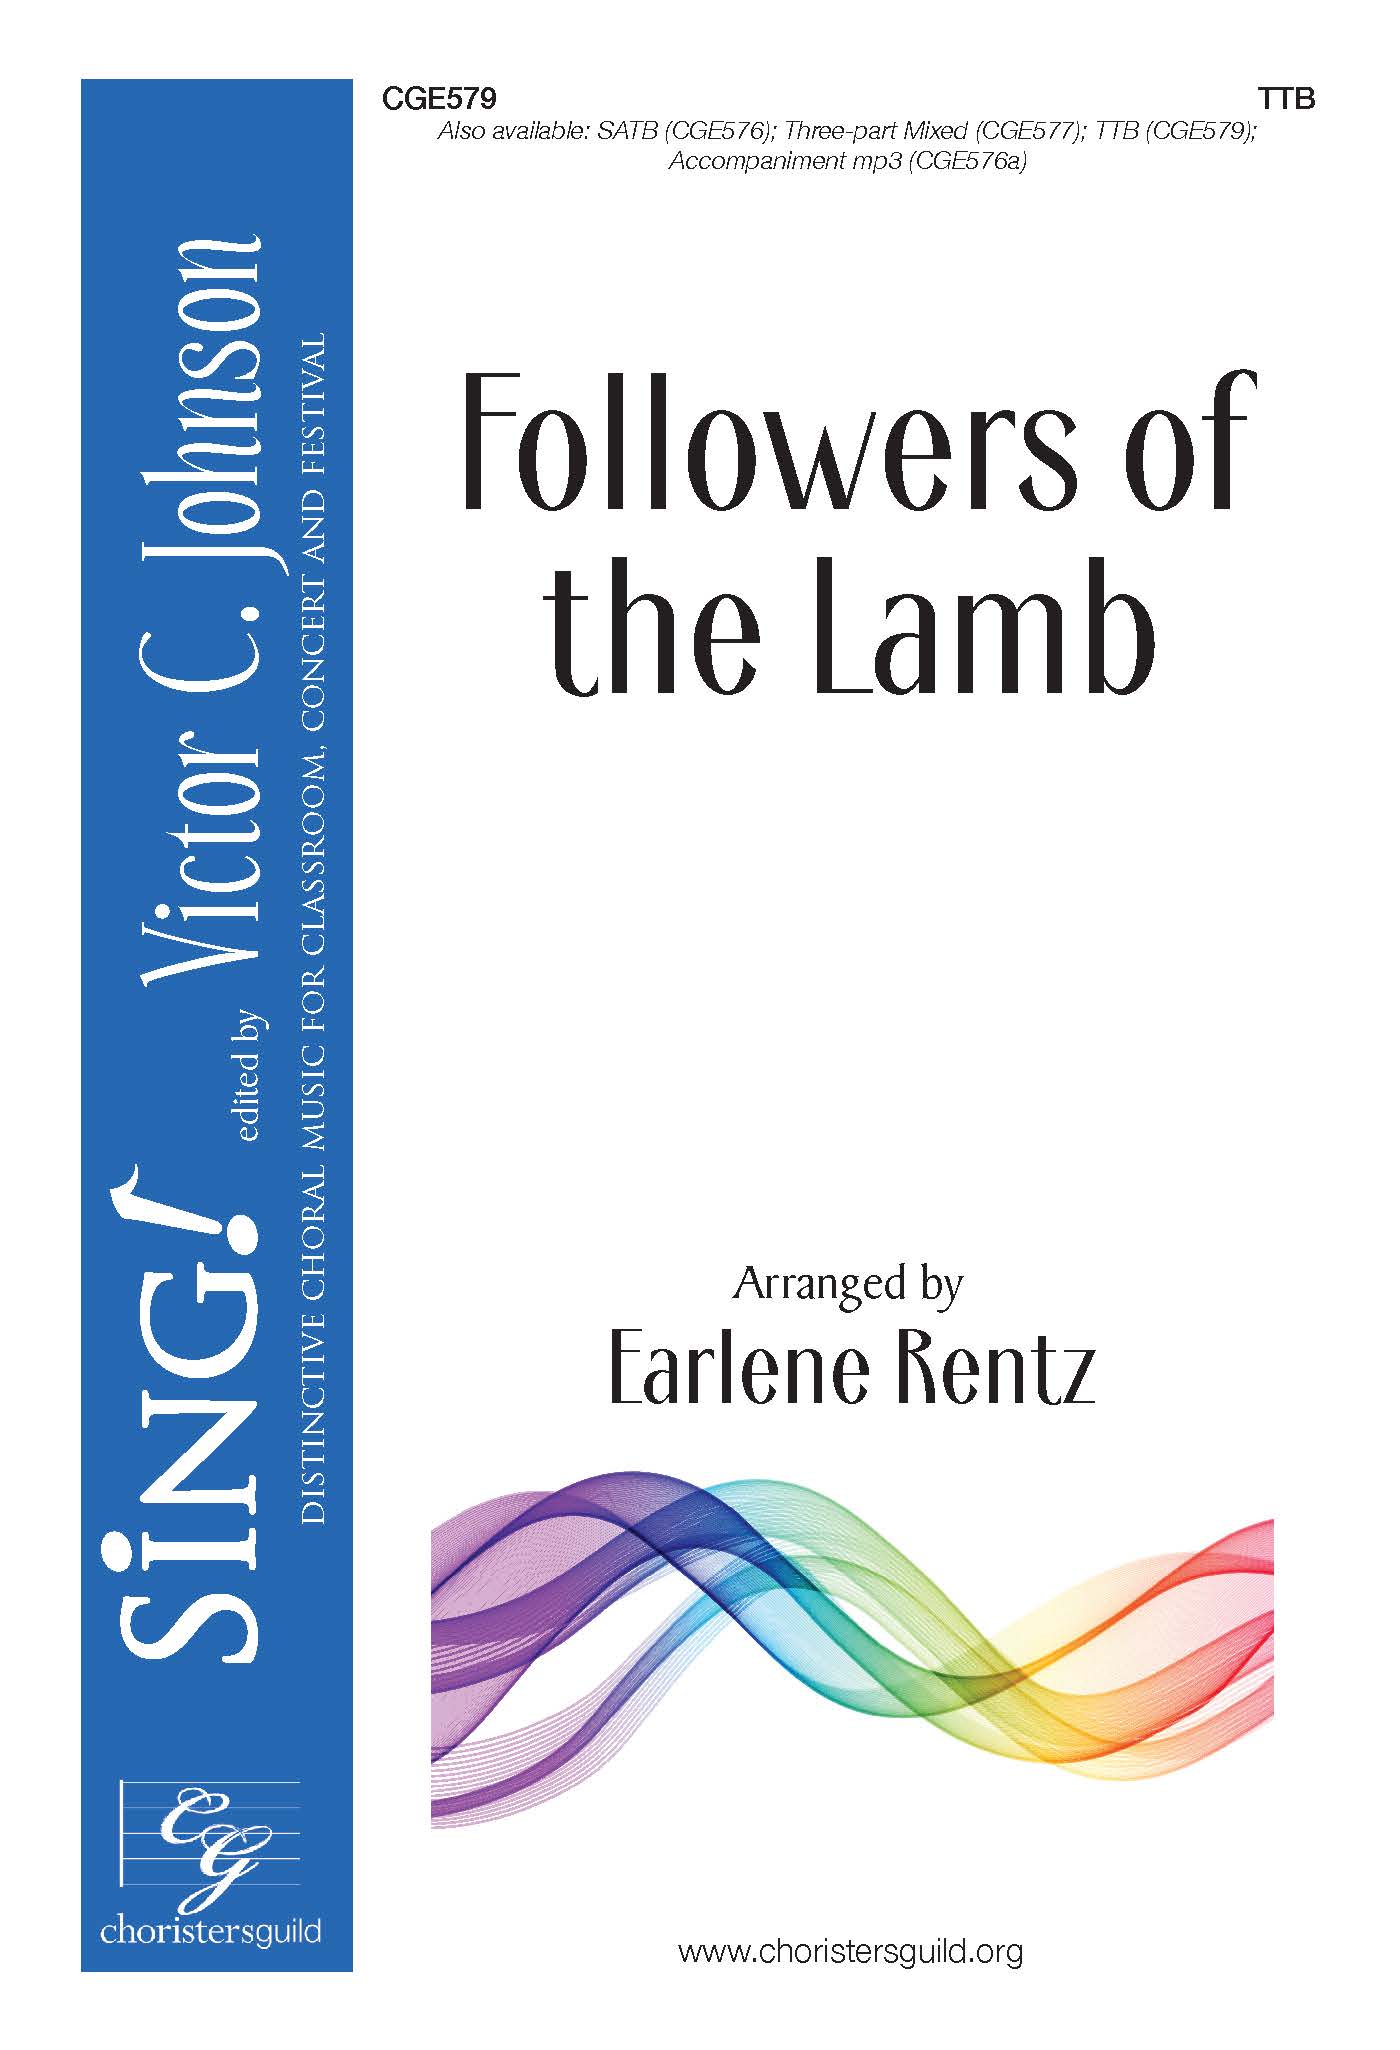 Followers of the Lamb - TTB